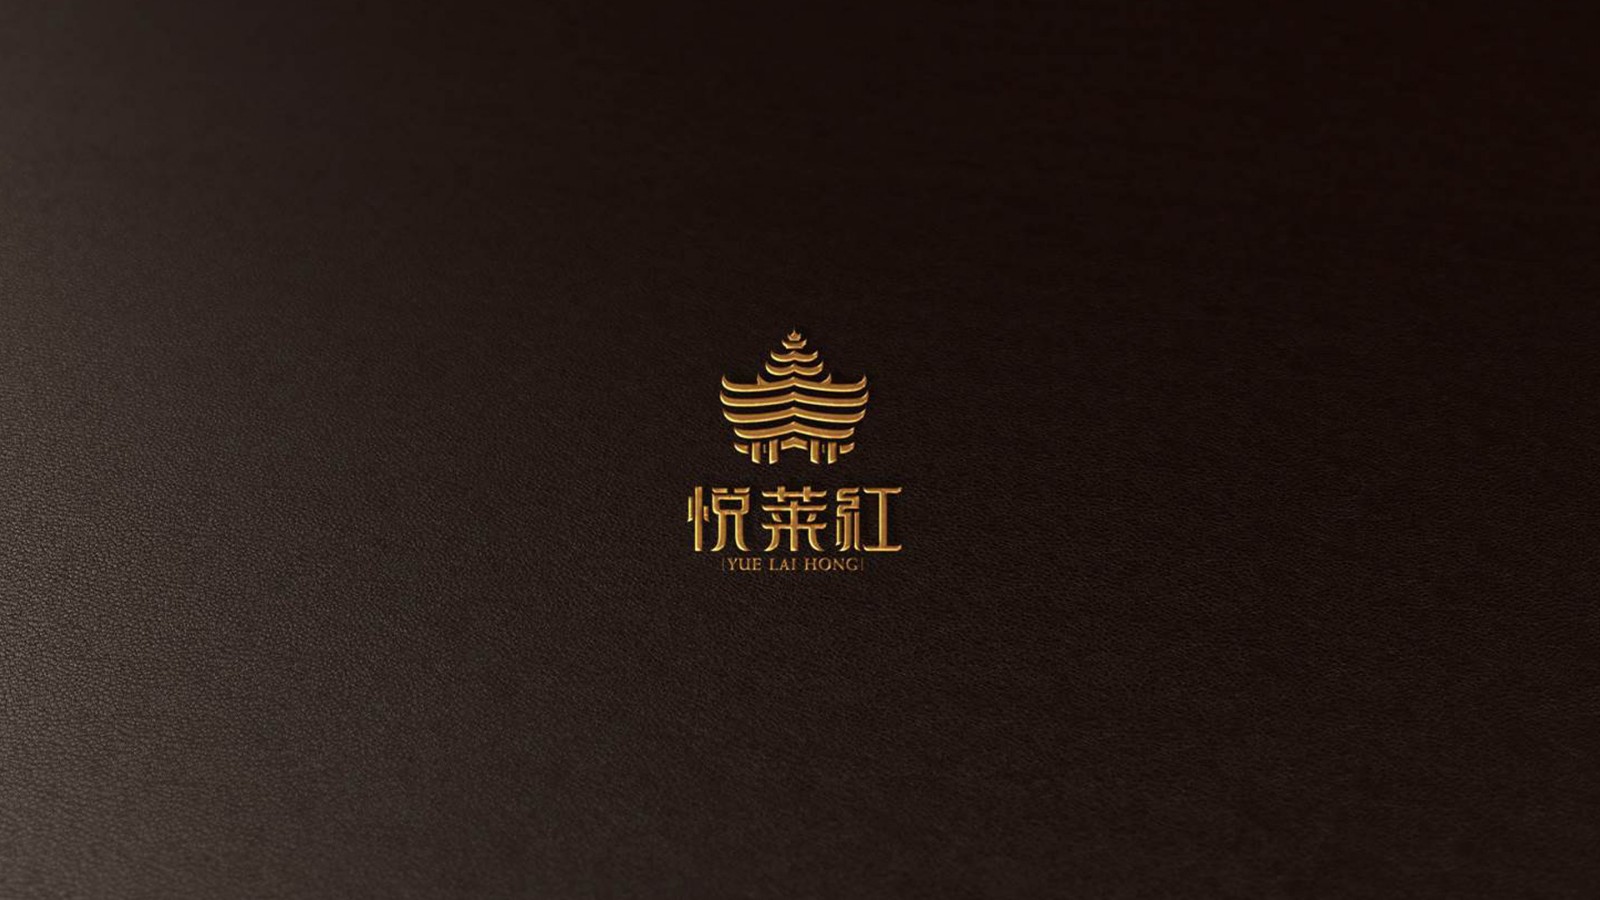 深圳包装设计公司,古一设计,葡萄酒包装设计公司,葡萄酒logo设计,国产红酒包装设计